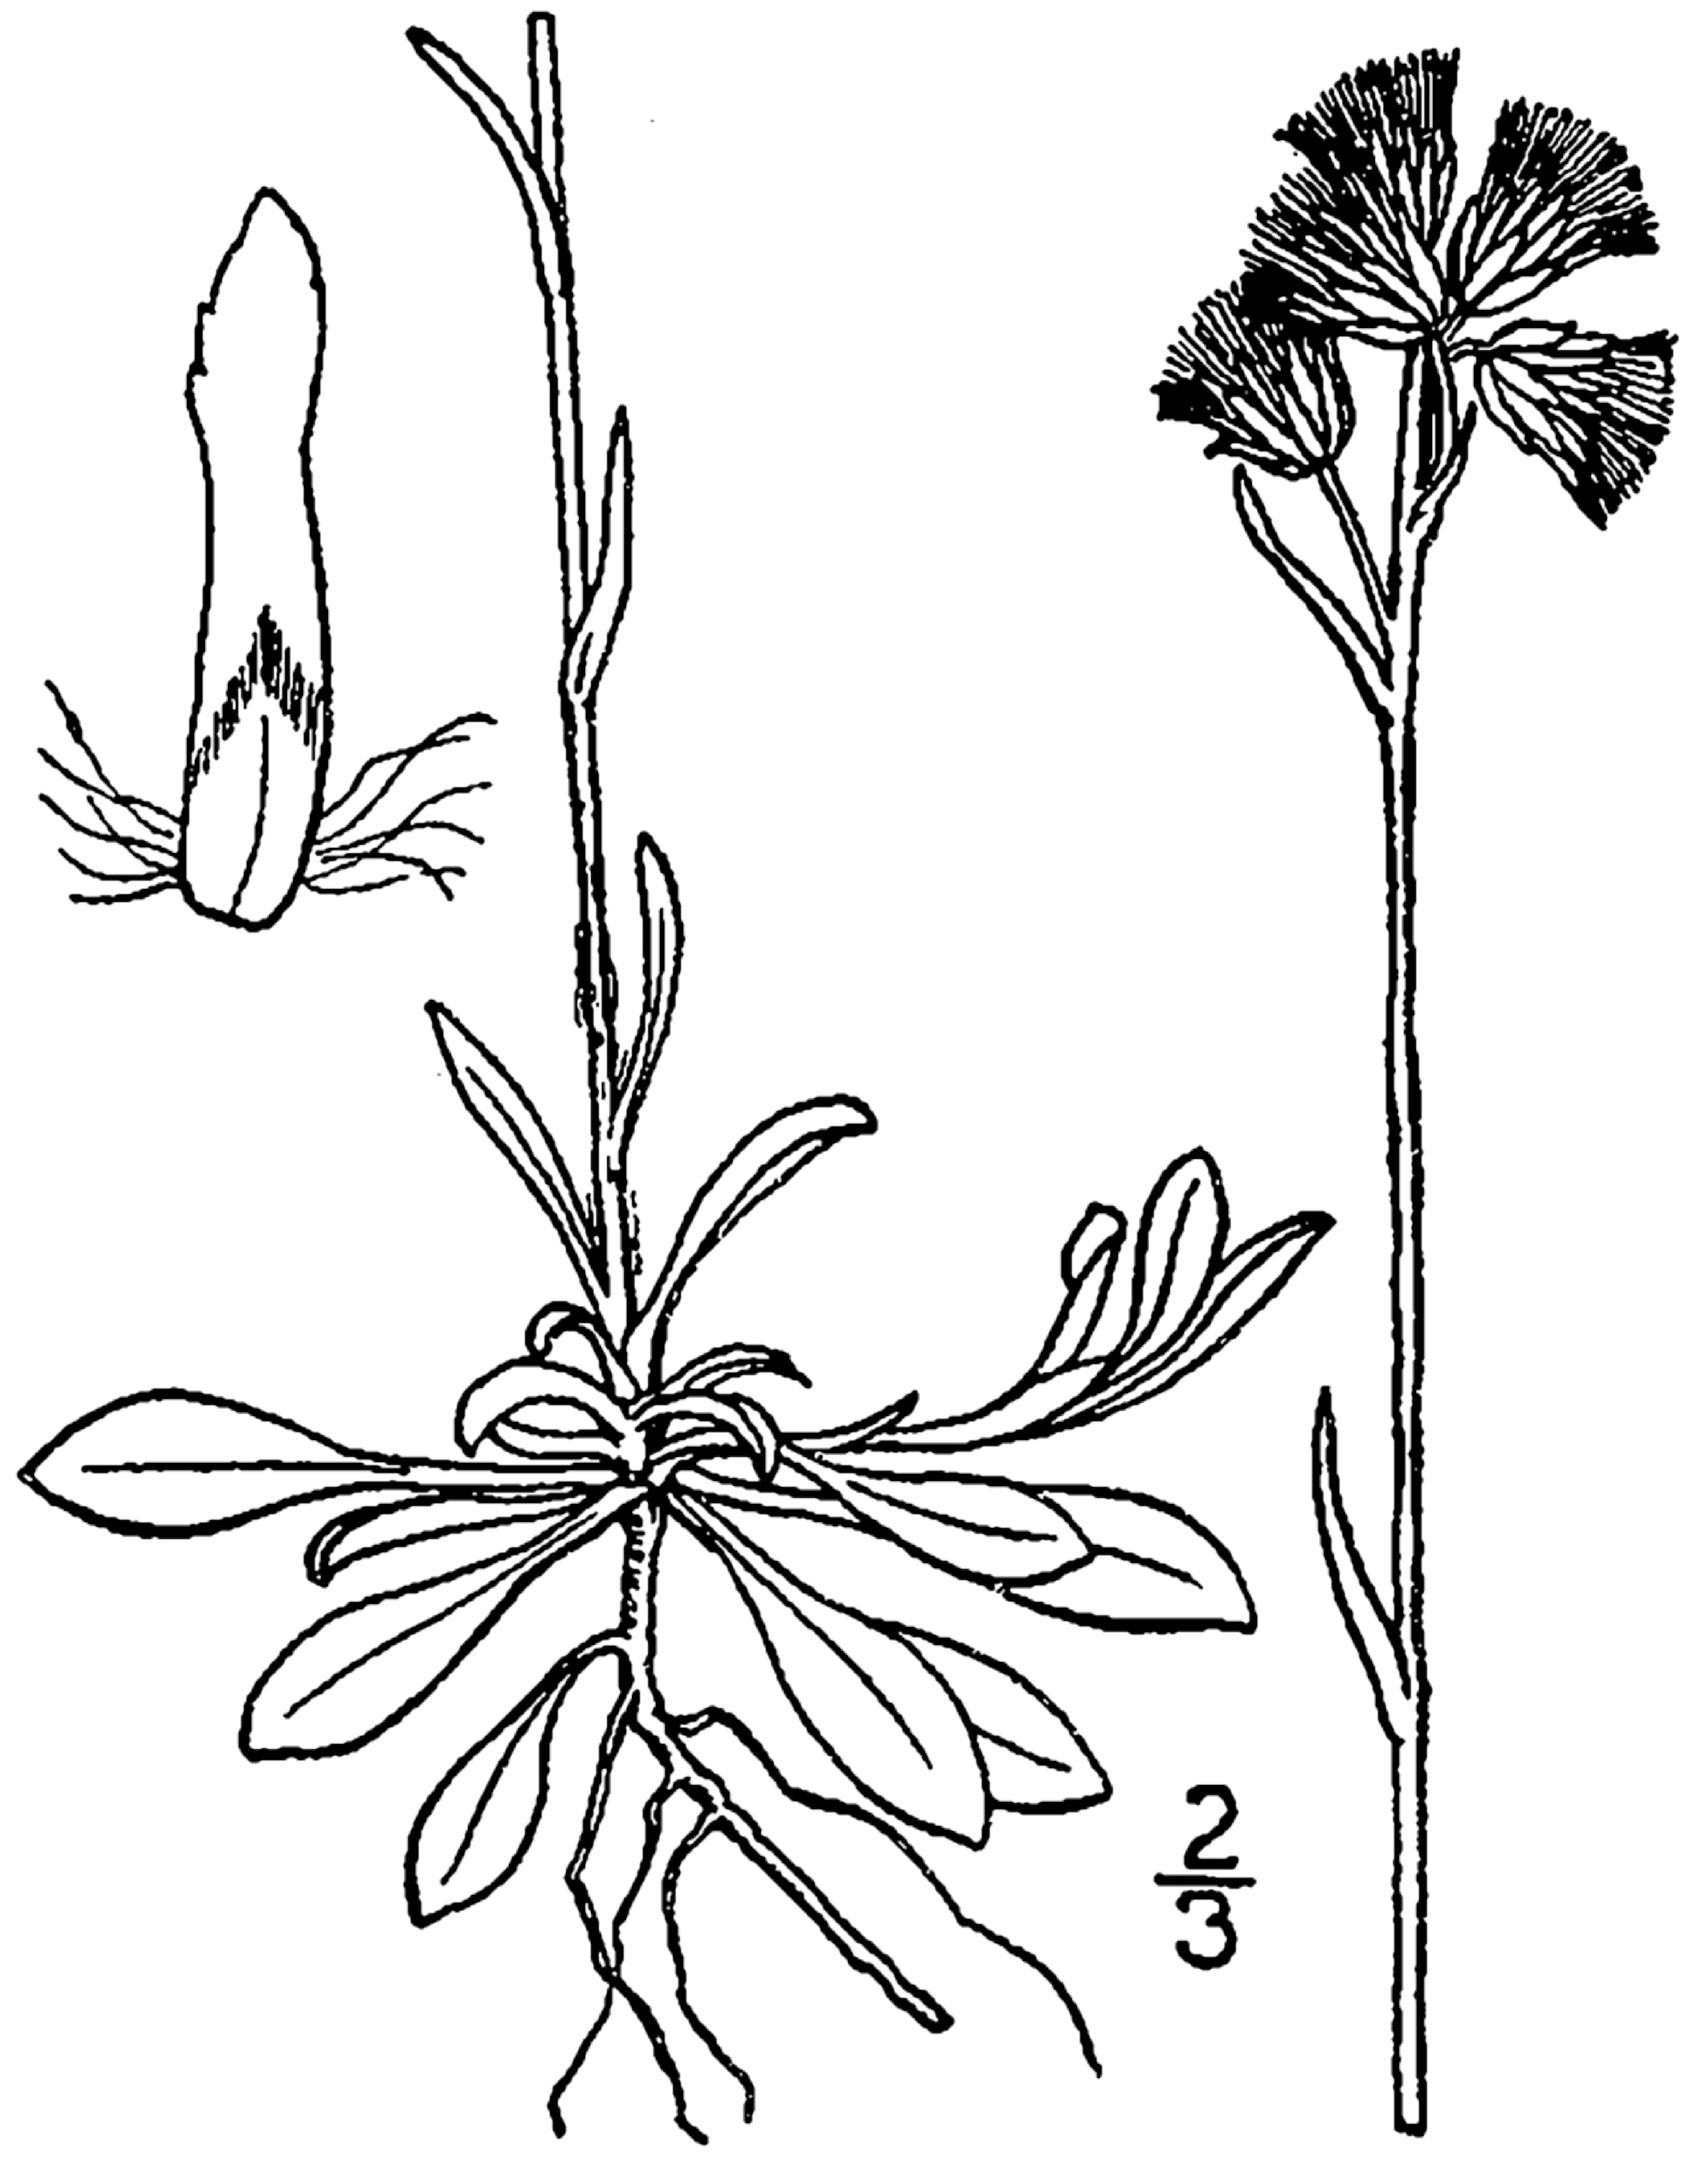 USDA Canadian Pussytoes botanical illustration circa 1913..